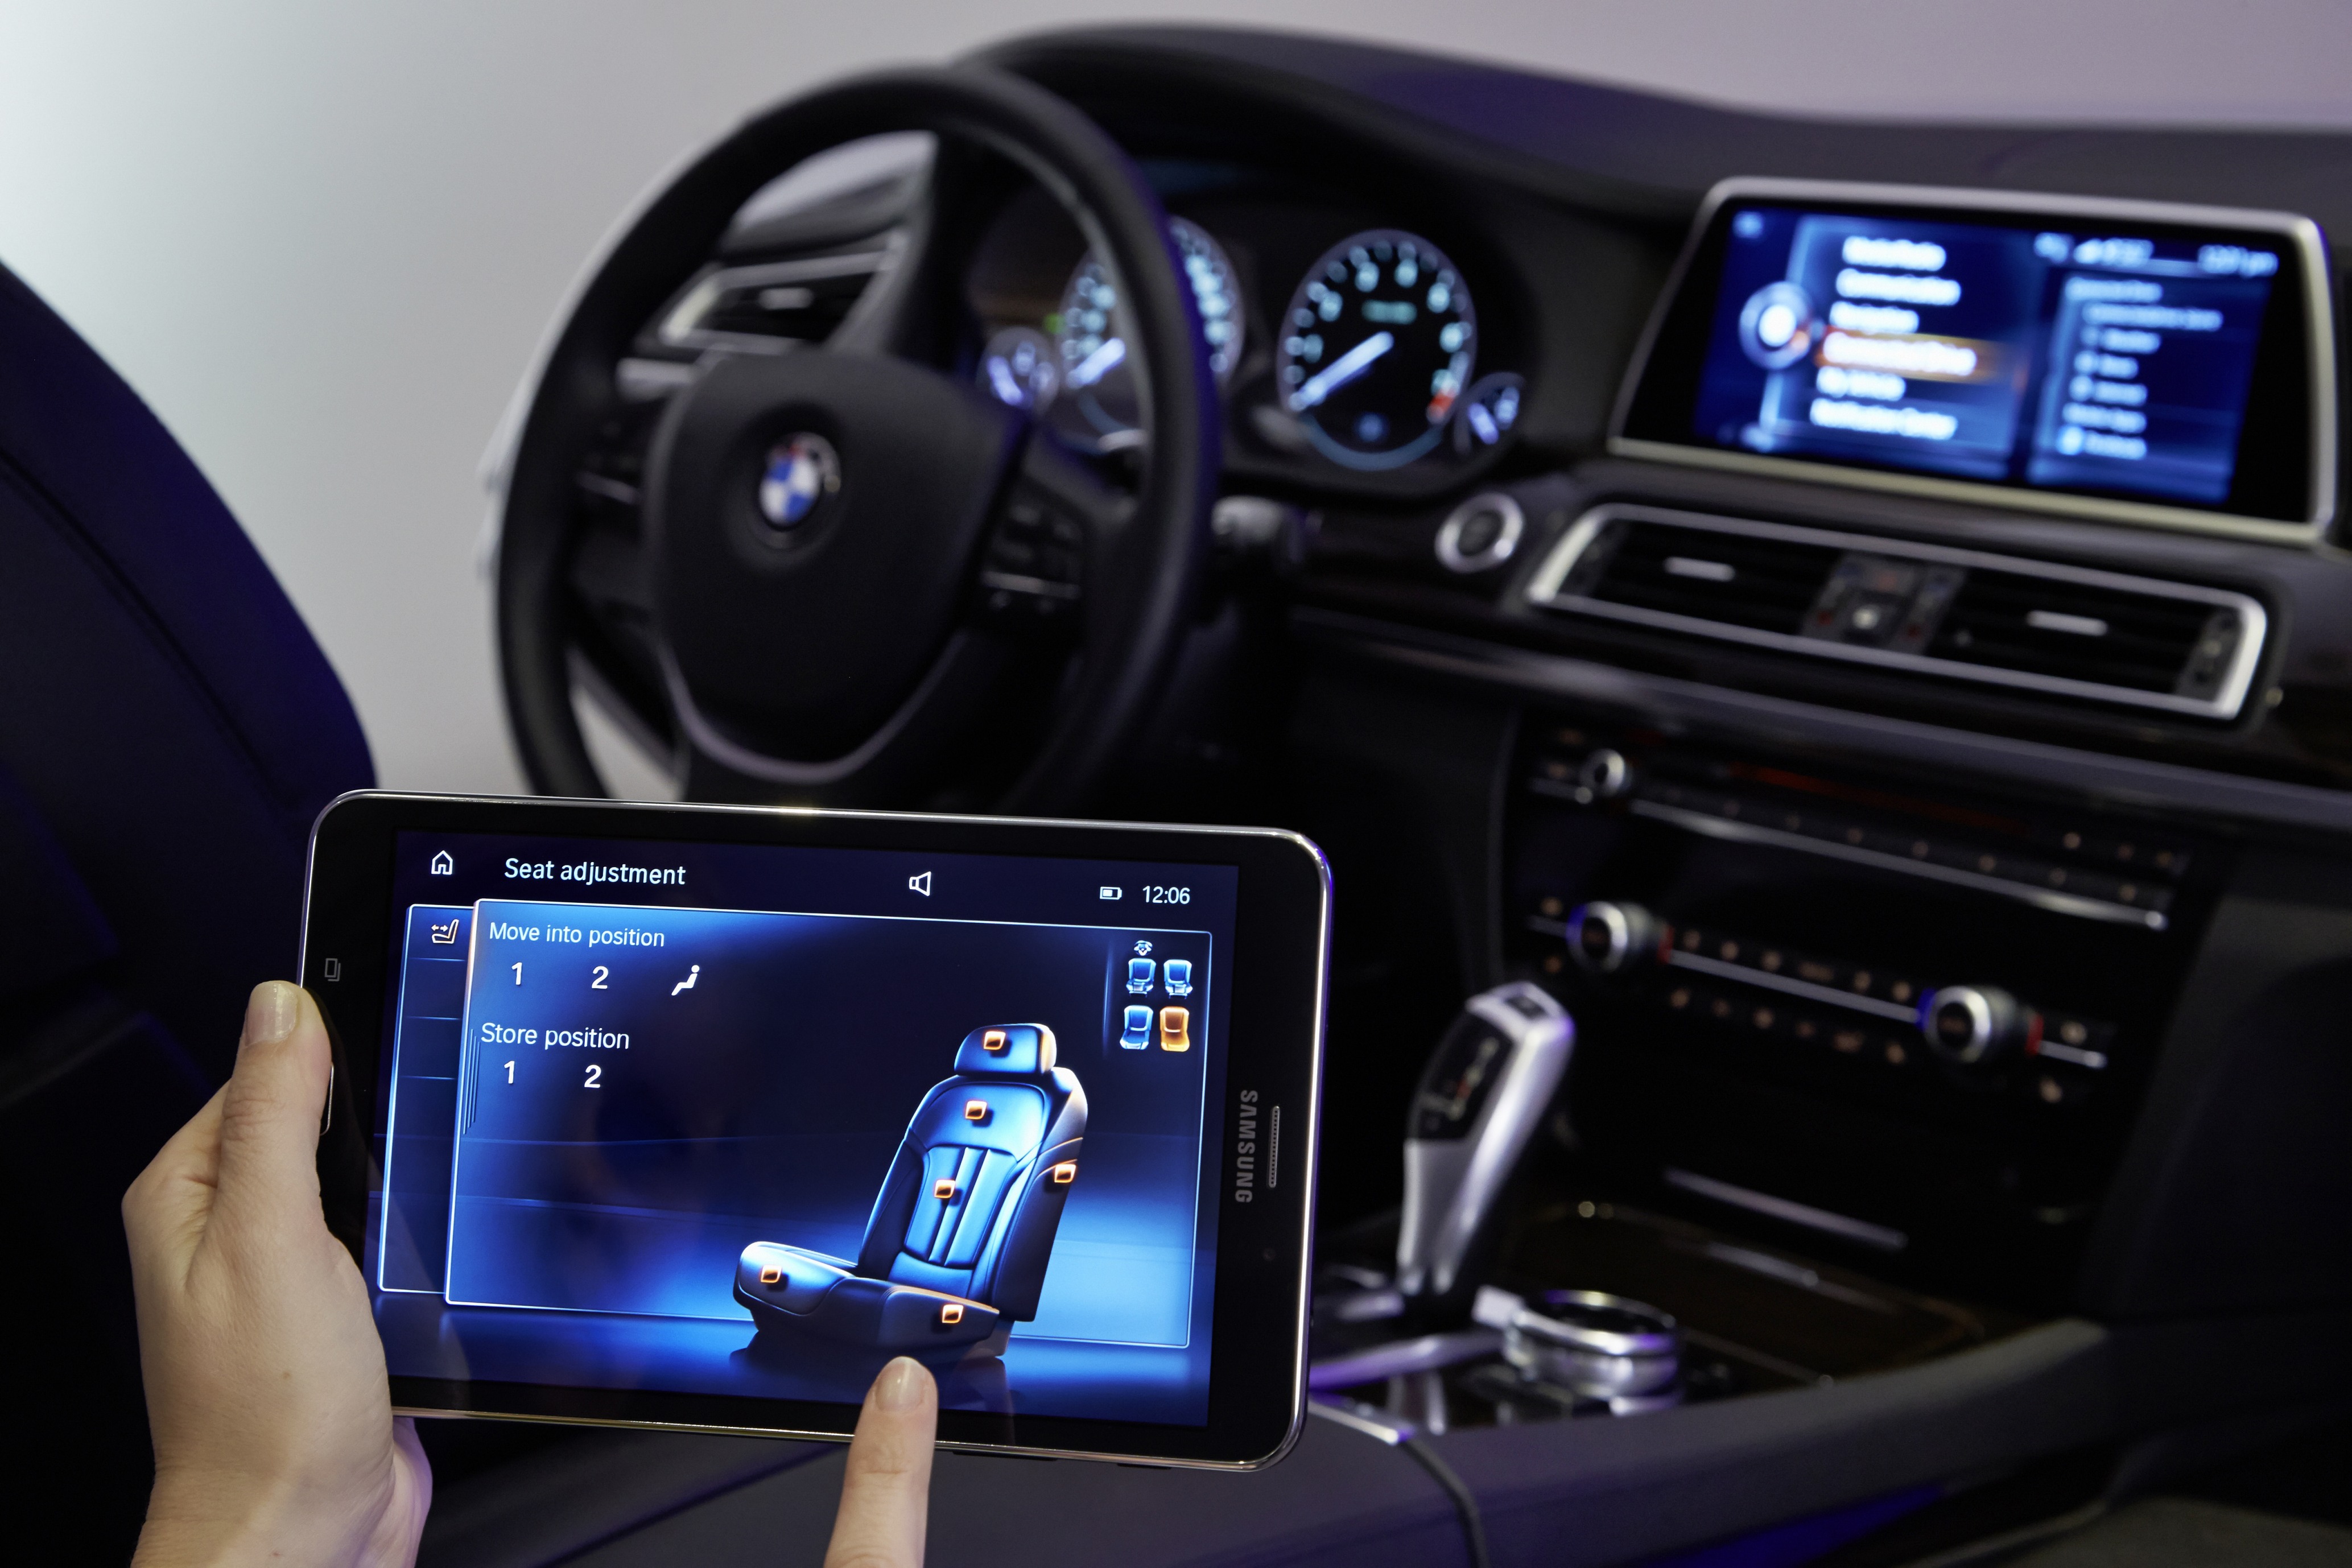 Планшет BMW Touch Command. BMW сенсорный монитор. Смартфон БМВ сенсорный. Сенсорный BMW W машина новый производства. Интернет в машине через телефон